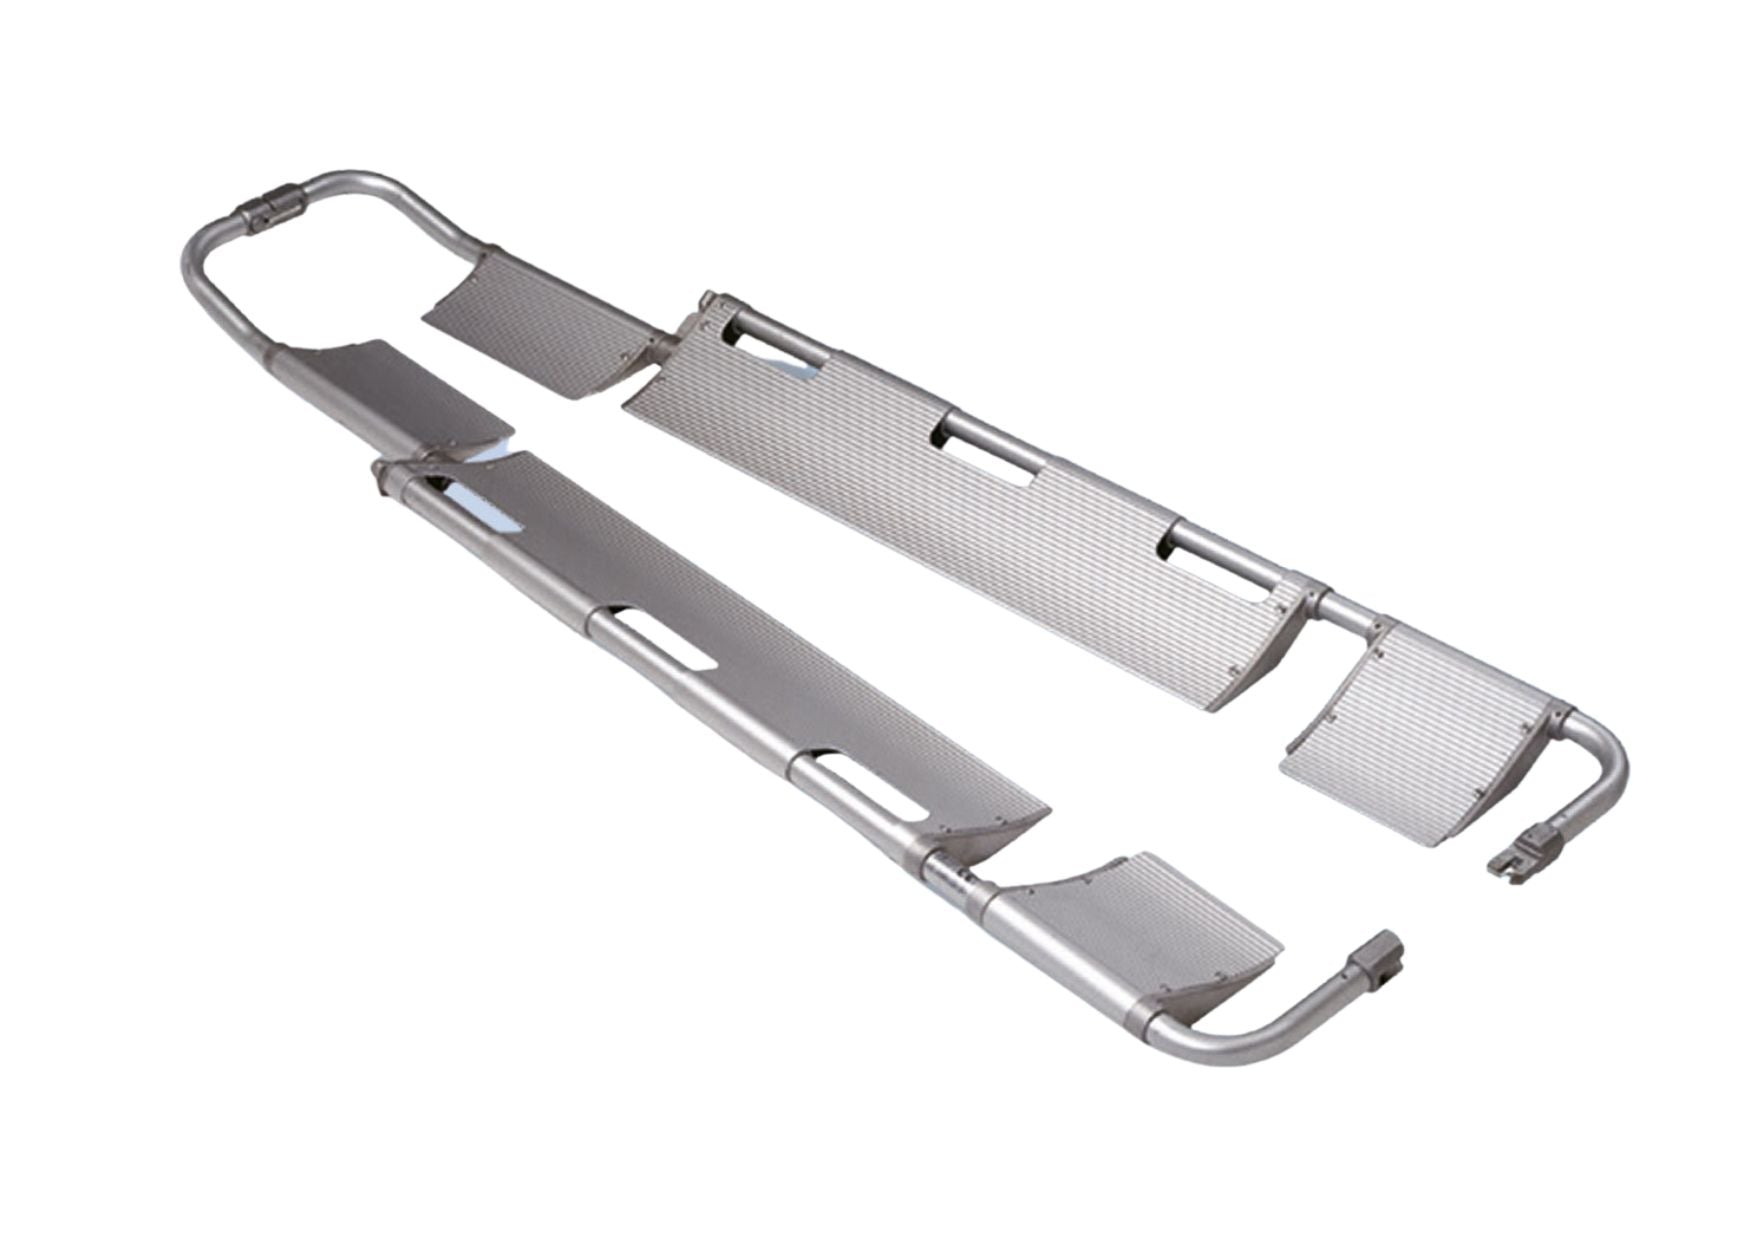 Folding aluminum scoop stretcher